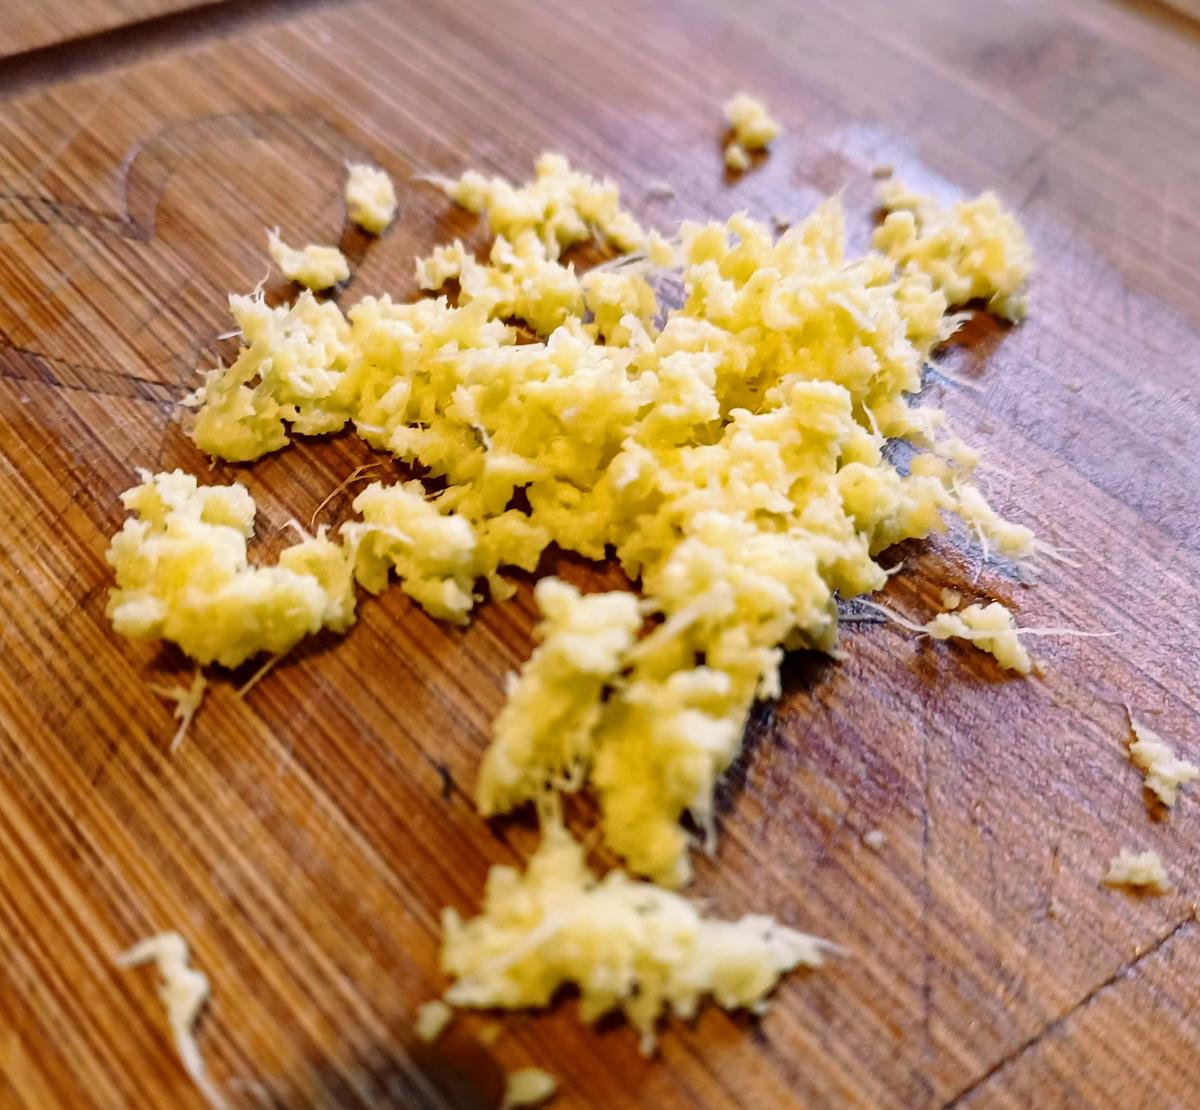 Kartoffel - Gelbe Bete - Cremesuppe zur kochbar Challenge Dezember 2021 - Rezept - Bild Nr. 15103